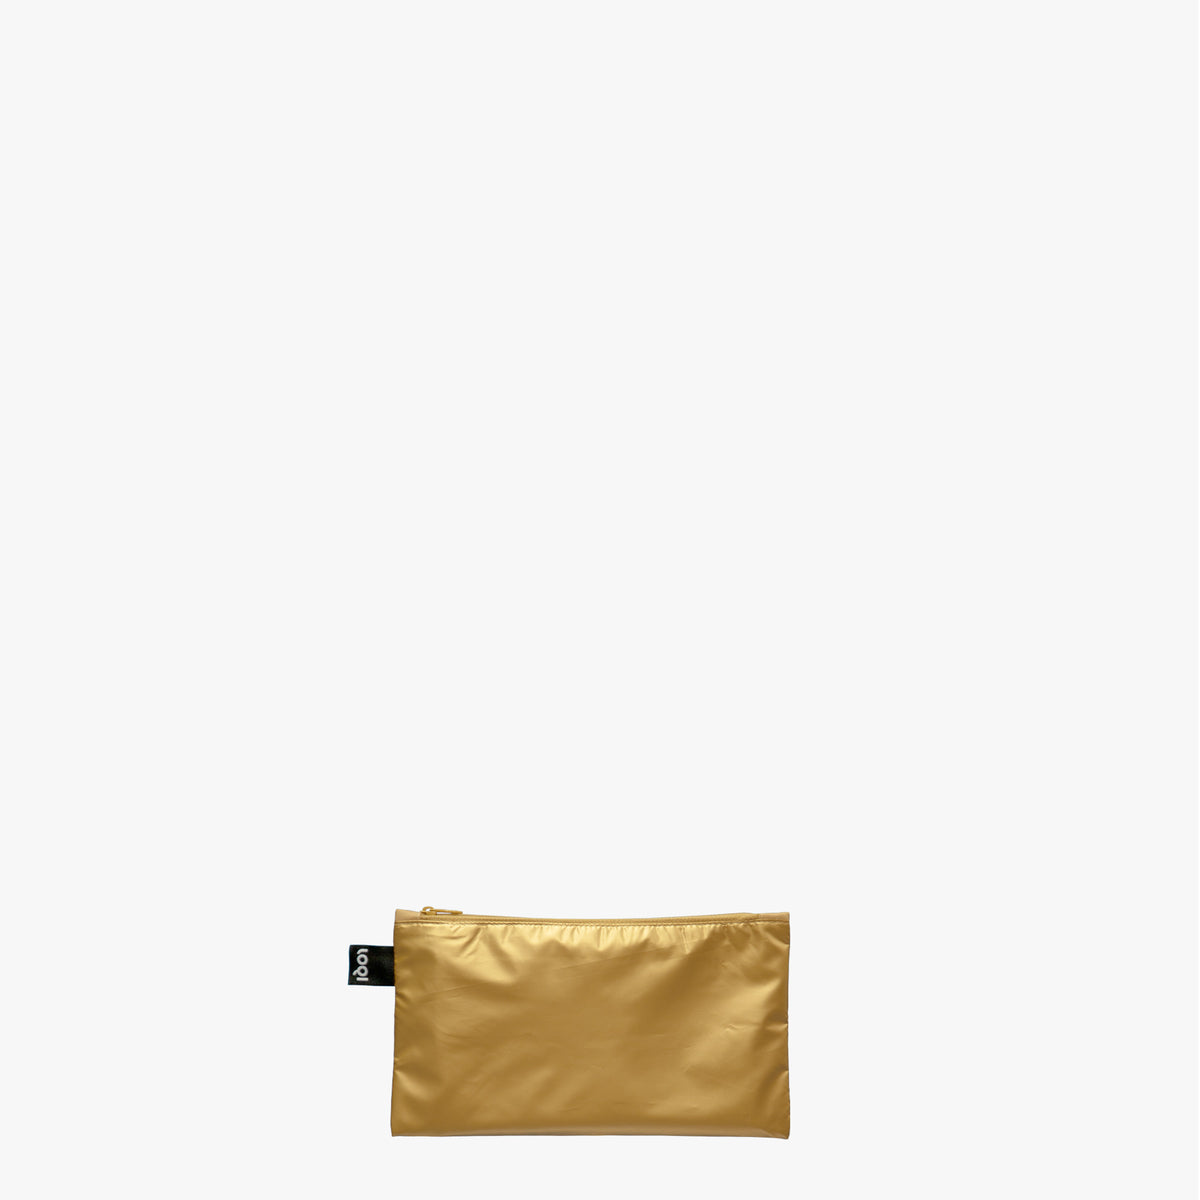 Tasche con zip in oro, argento e oro rosa